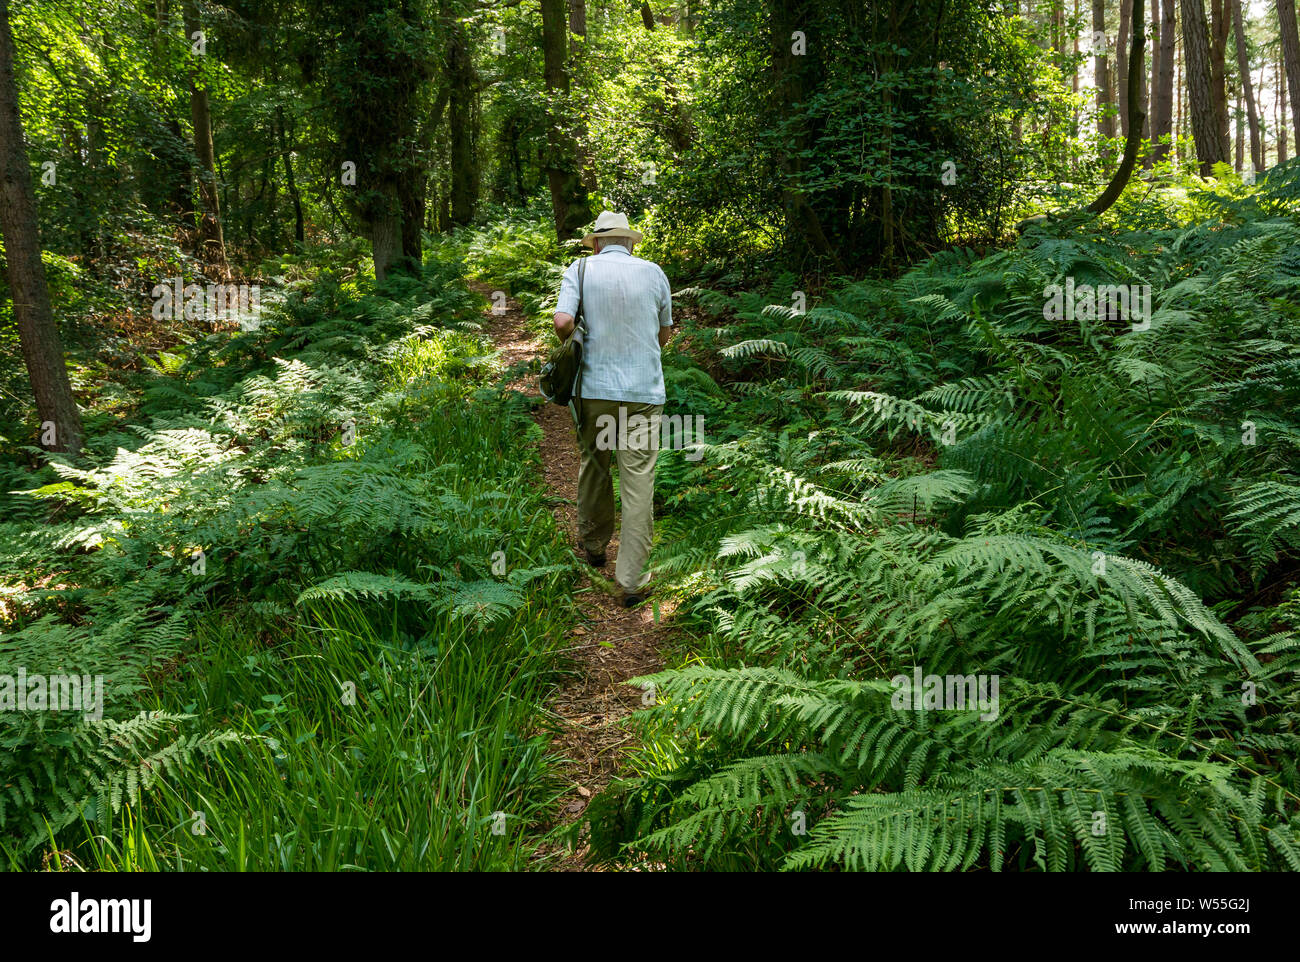 Humbie legno, East Lothian, Scozia, Regno Unito, 26 luglio 2019. Regno Unito Meteo: un uomo anziano che indossa un cappello di Panama passeggiate all'ombra di un fitto bosco di un paese a piedi in estate Foto Stock